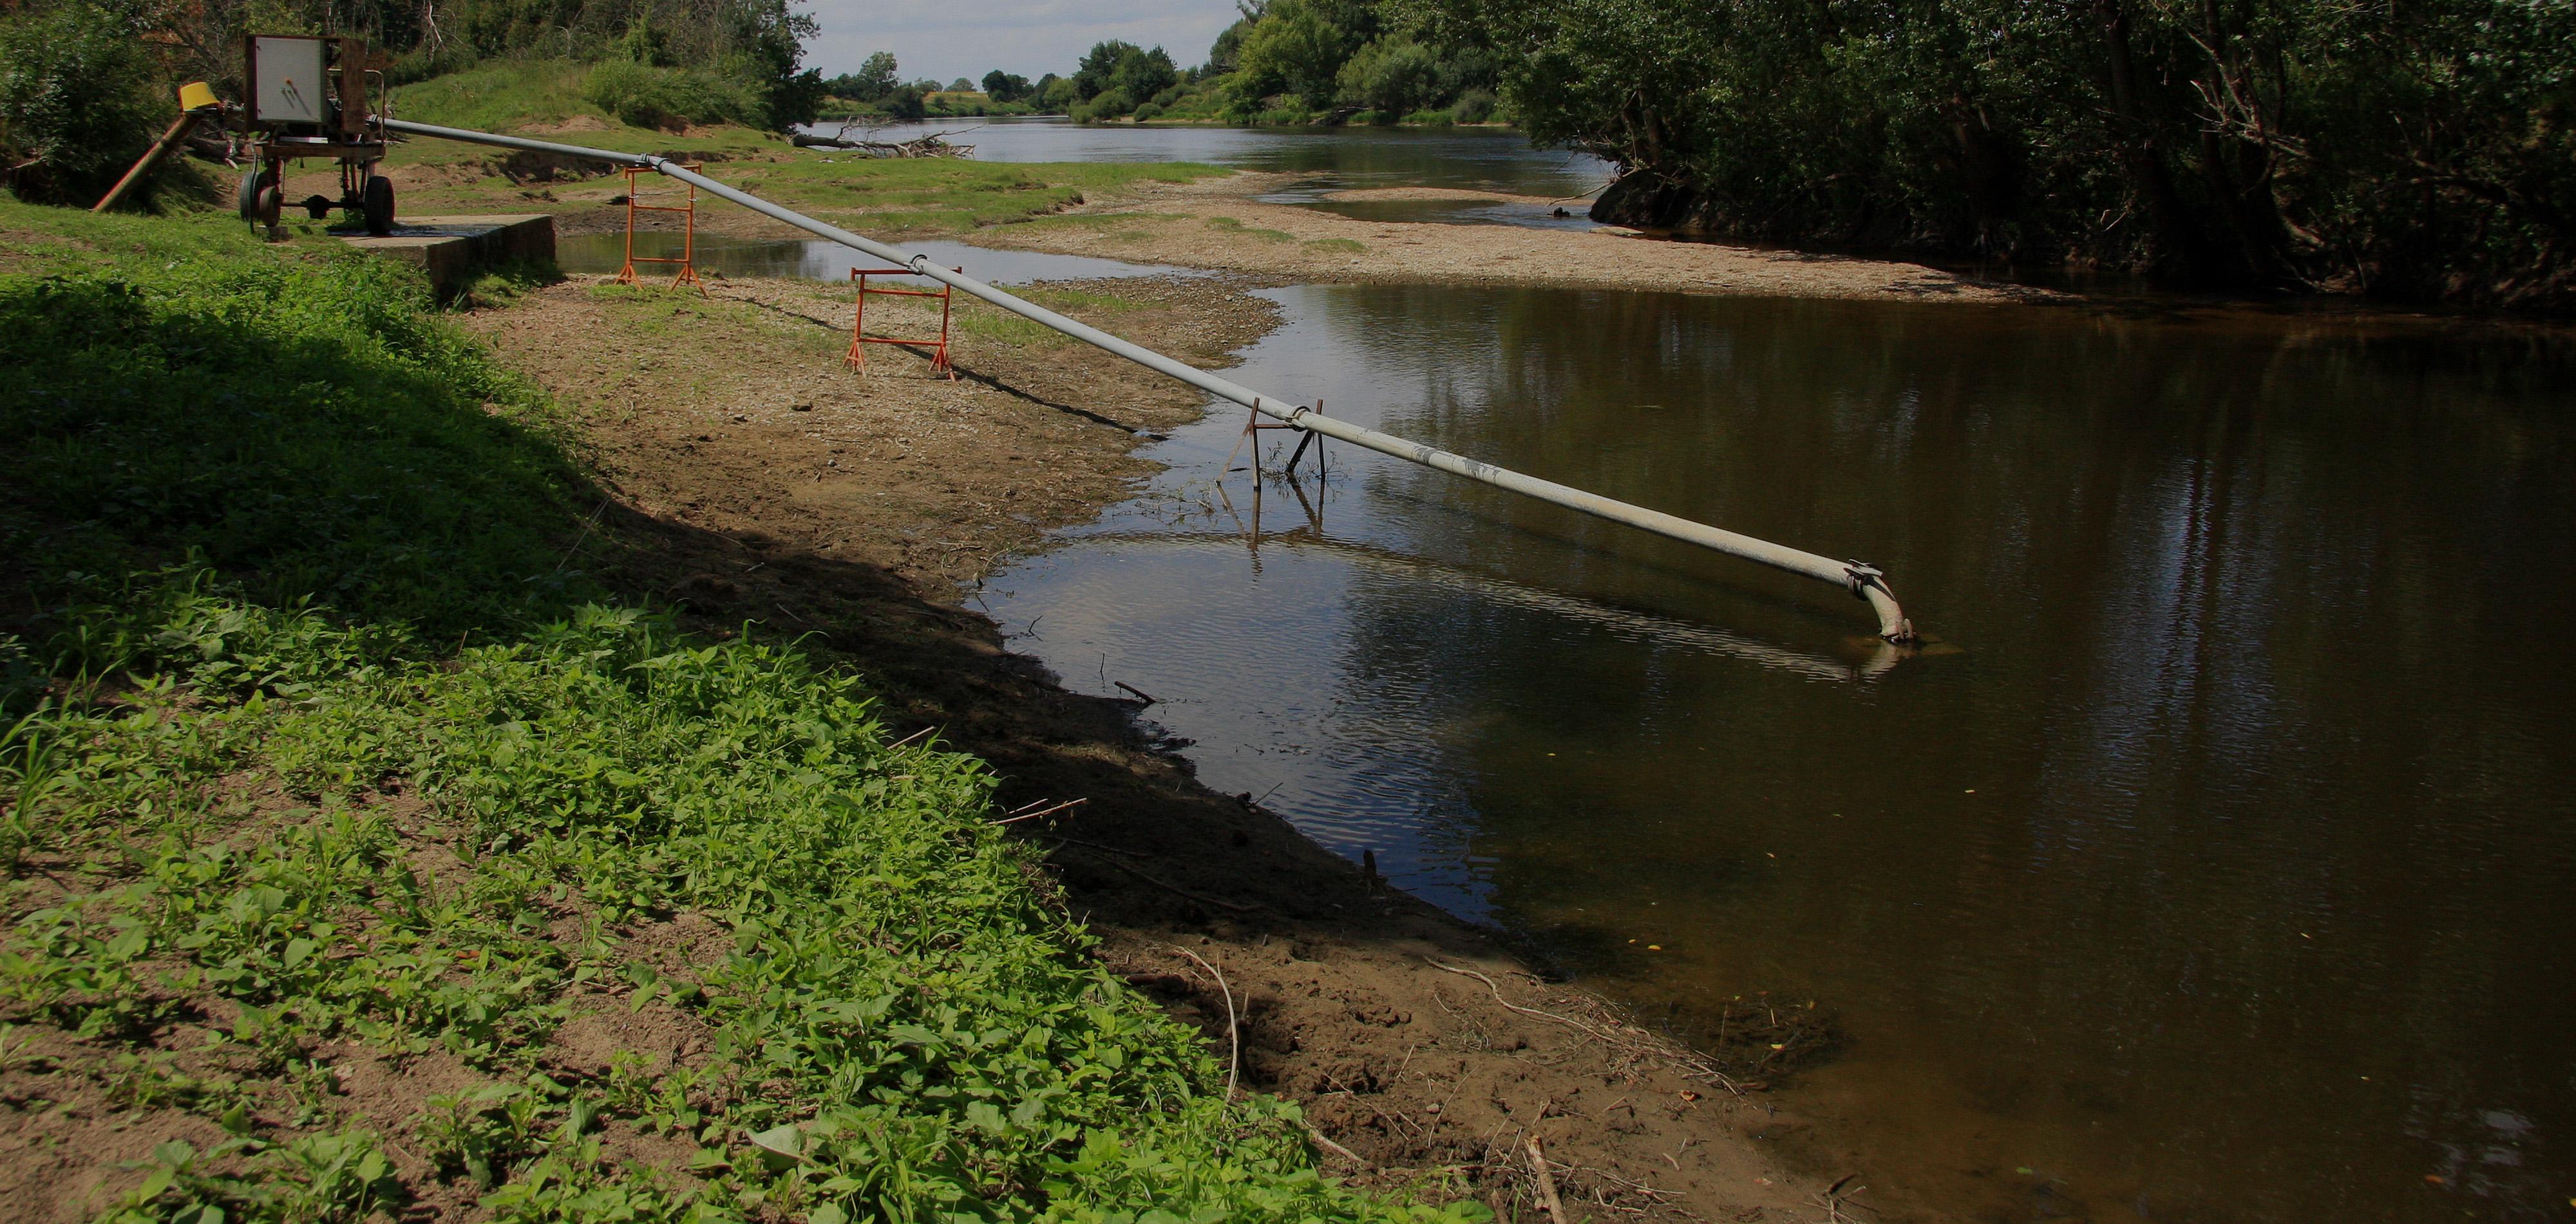 Pompage de l'eau dans une rivière, Indre et Loire